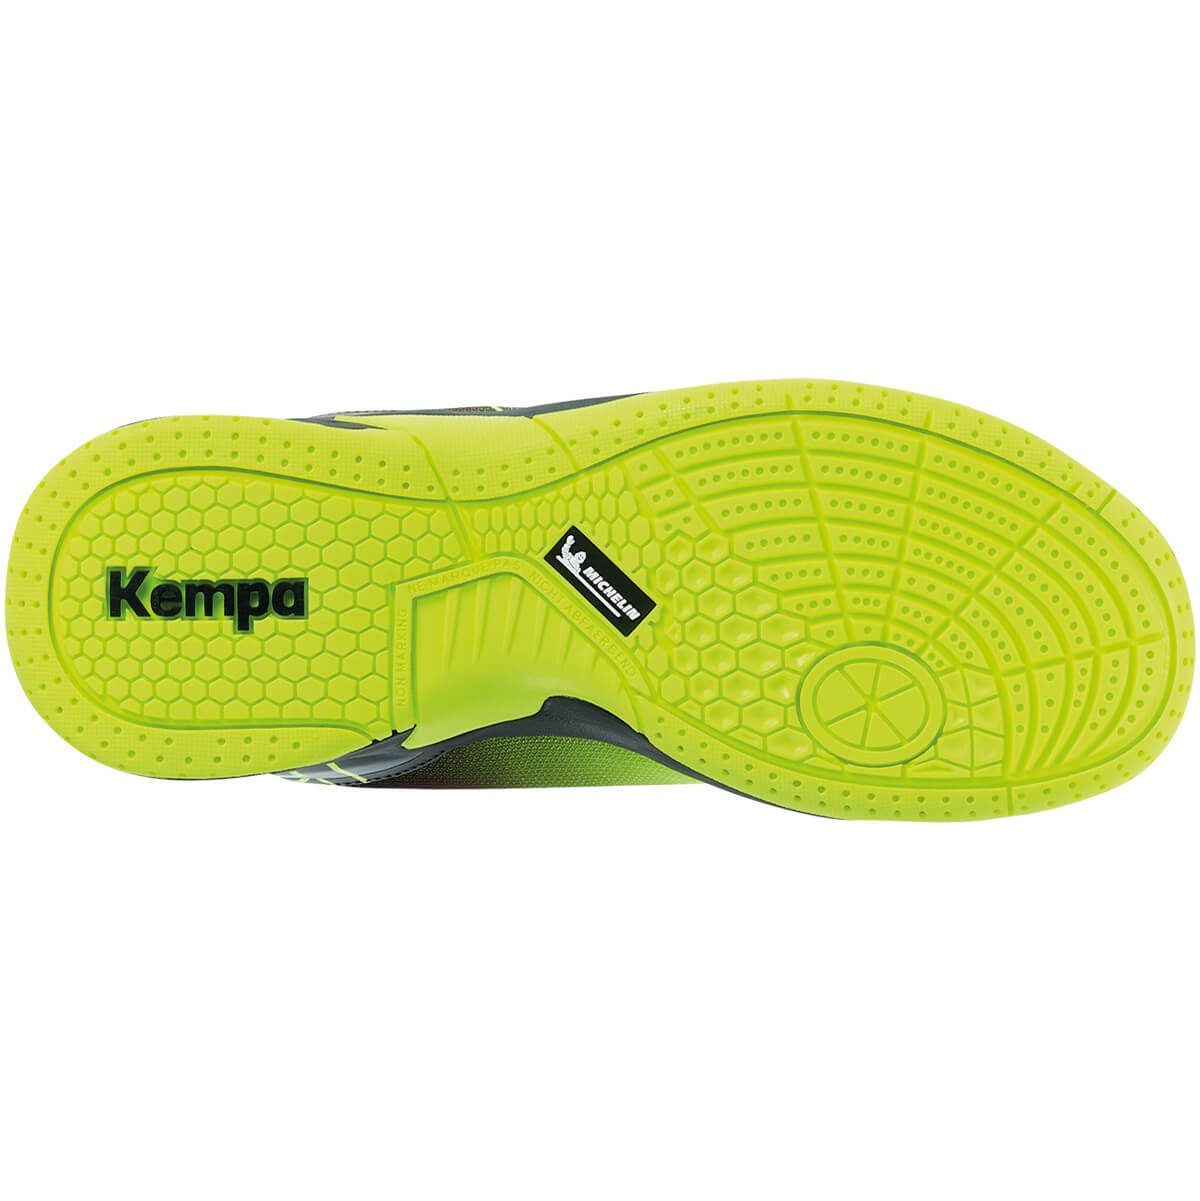 Kempa Kempa Hallen-Sport-Schuhe Hallenschuh fluo gelb/schwarz